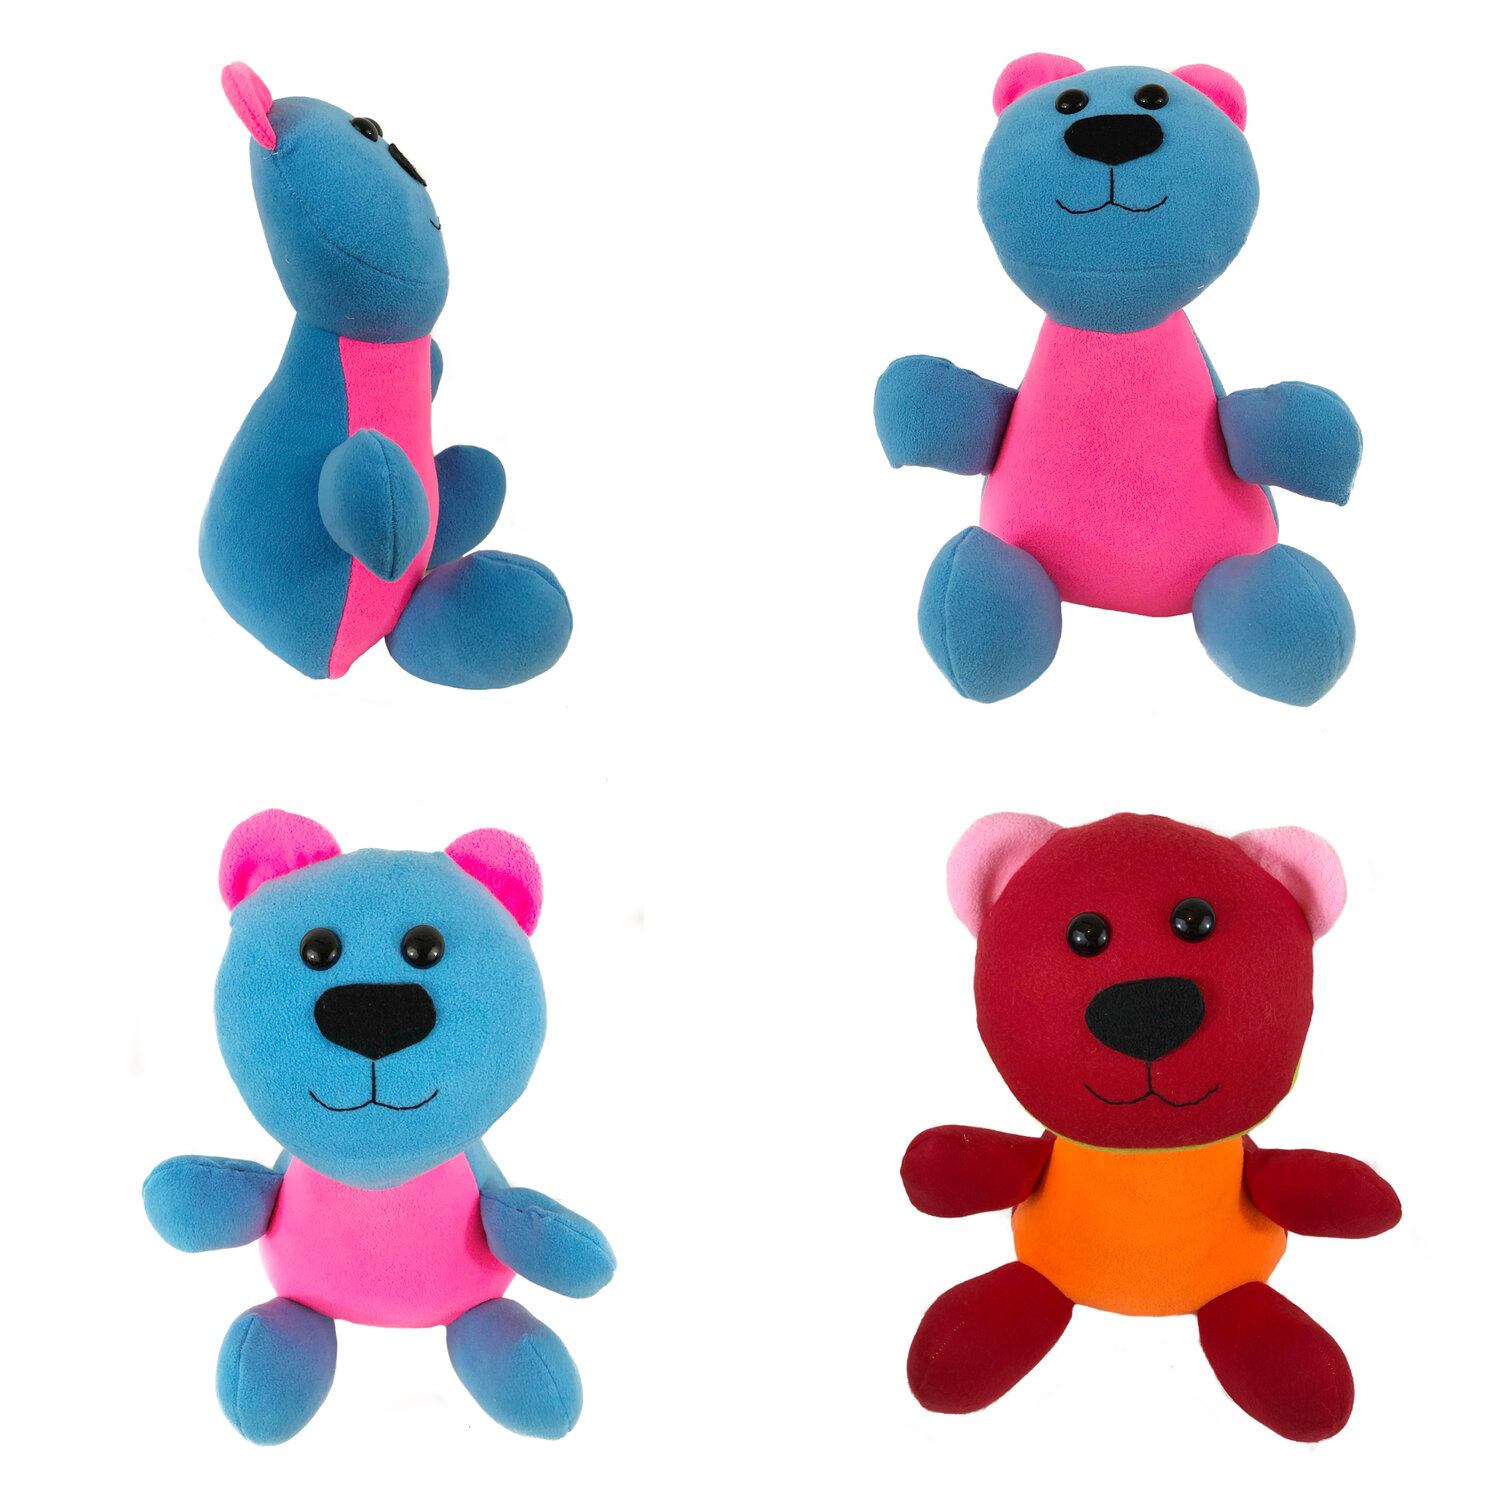 Teddy Bear Pattern — Sew Cute Patterns